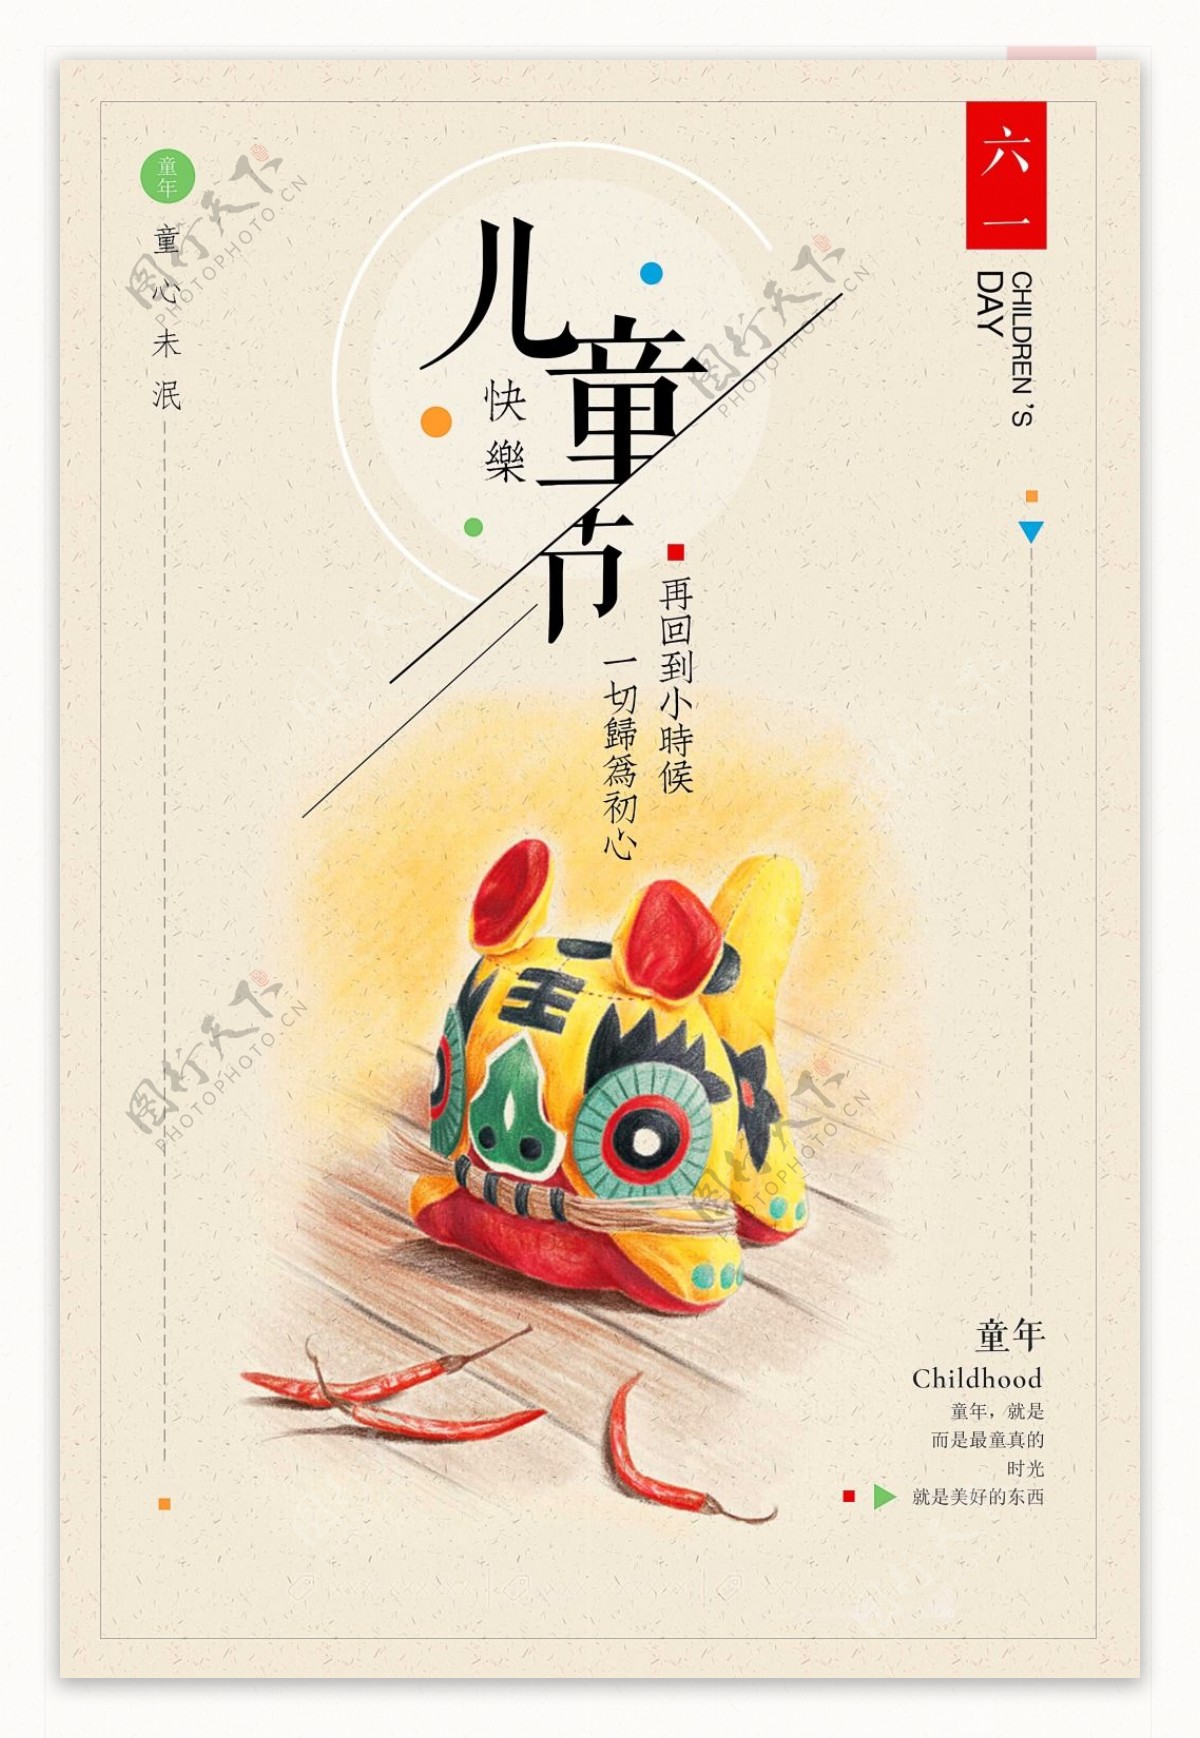 六一儿童节复古中国风儿时记忆公益宣传海报